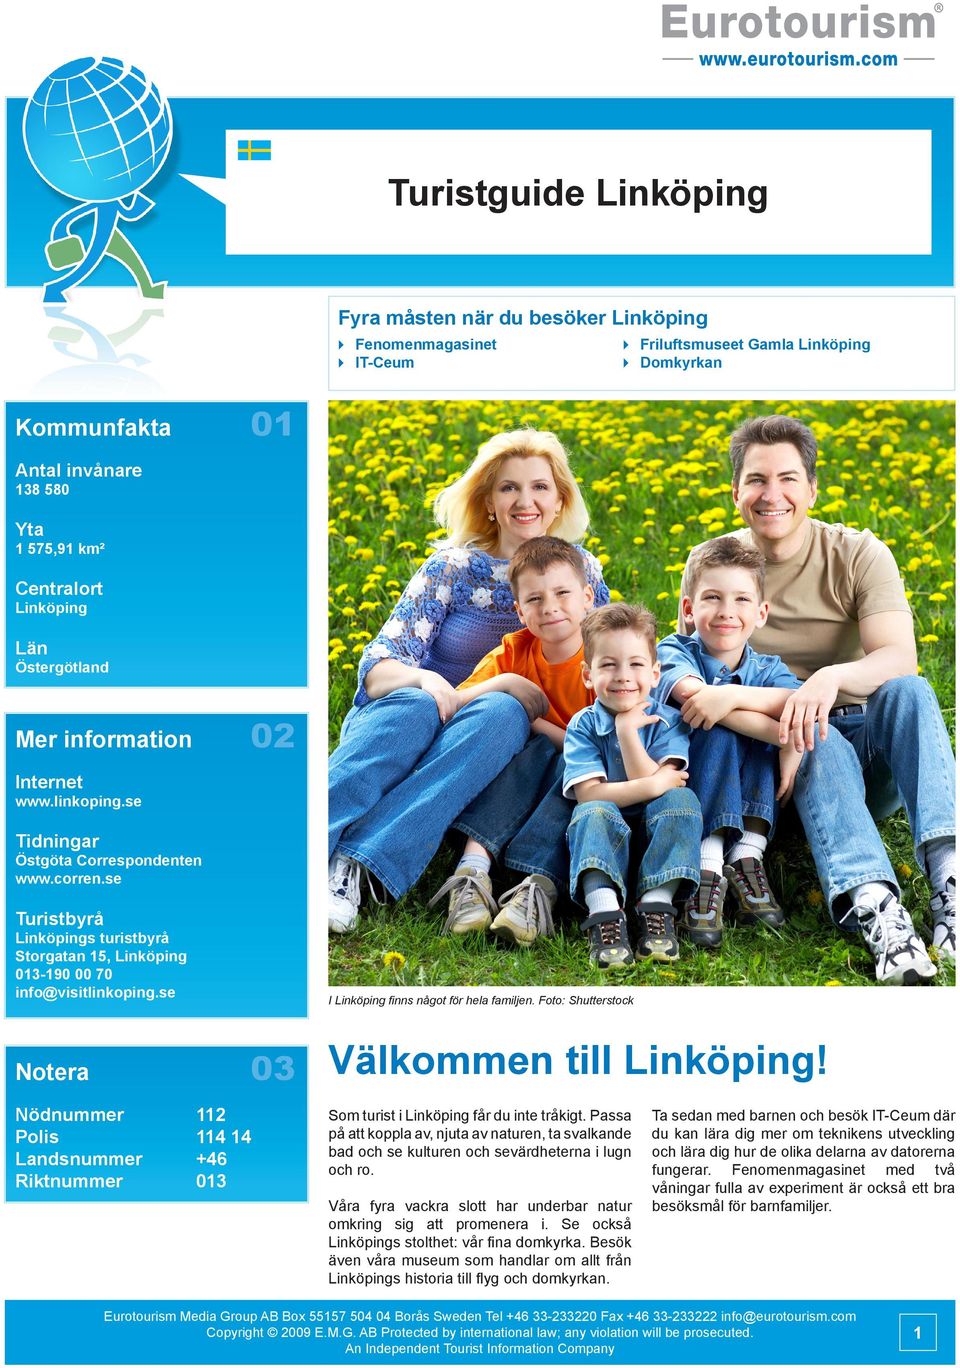 se Turistbyrå Linköpings turistbyrå Storgatan 15, Linköping 013-190 00 70 info@visitlinkoping.se I Linköping finns något för hela familjen.